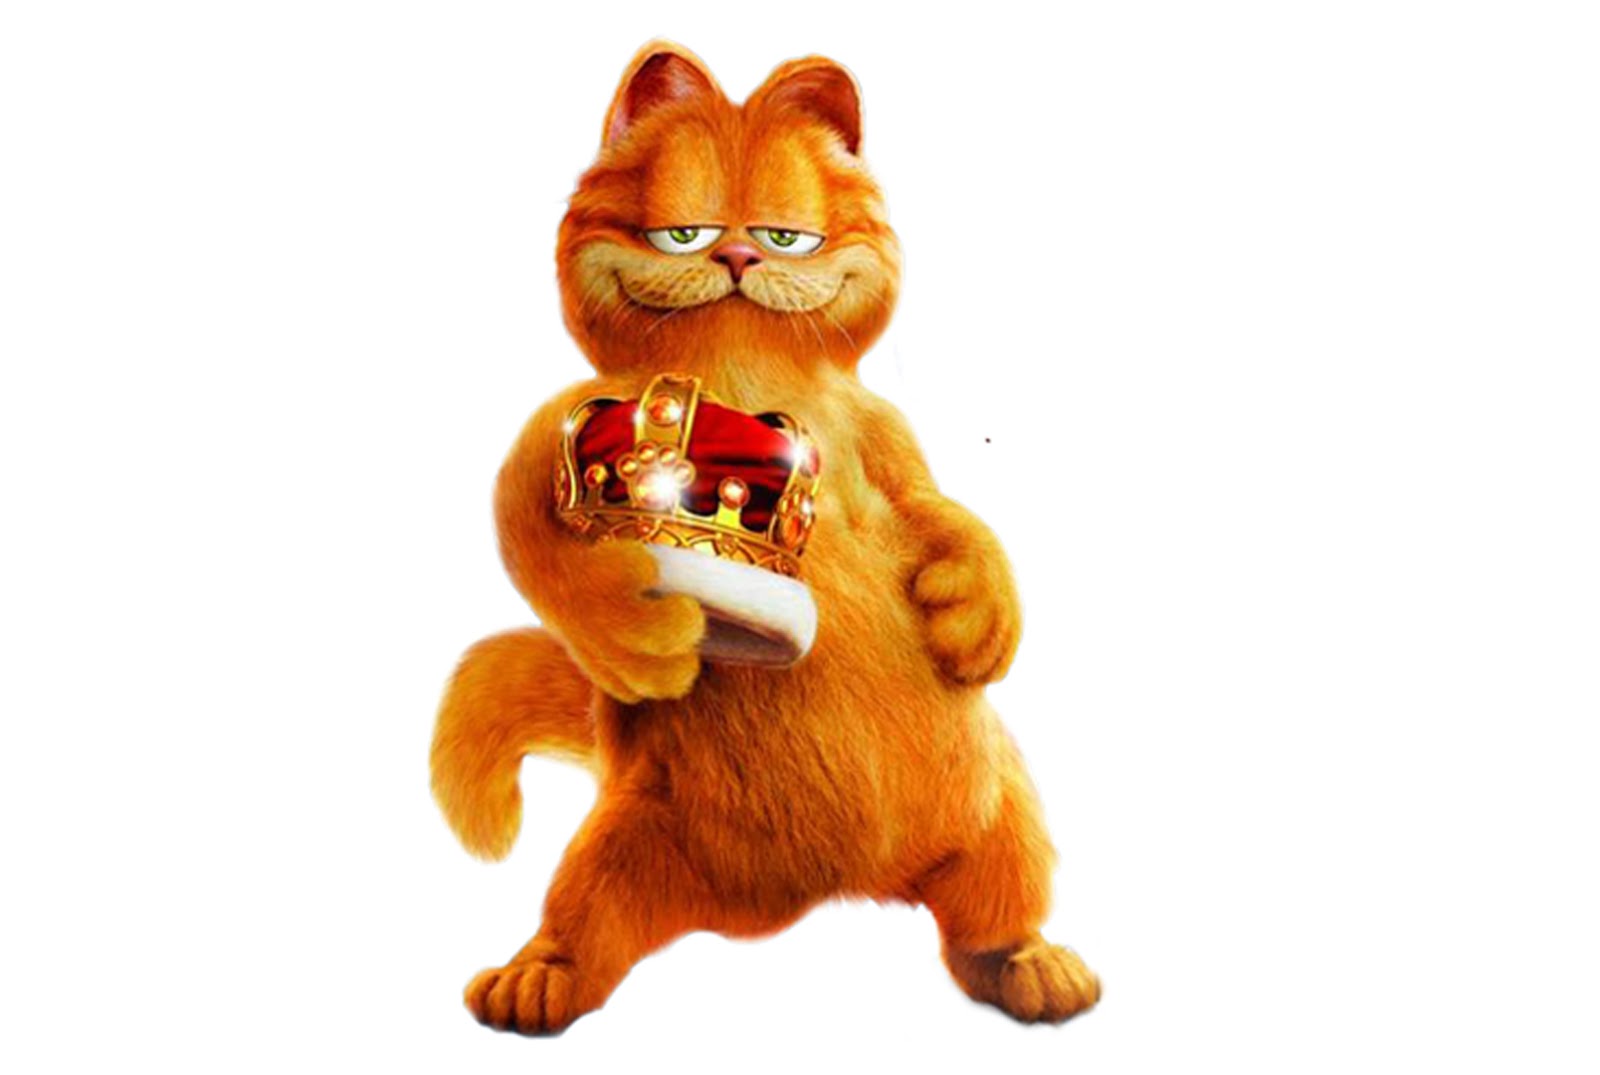 Wallpaper Lucu Gambar Kucing Garfield Terbaru 2016 Kata Kata